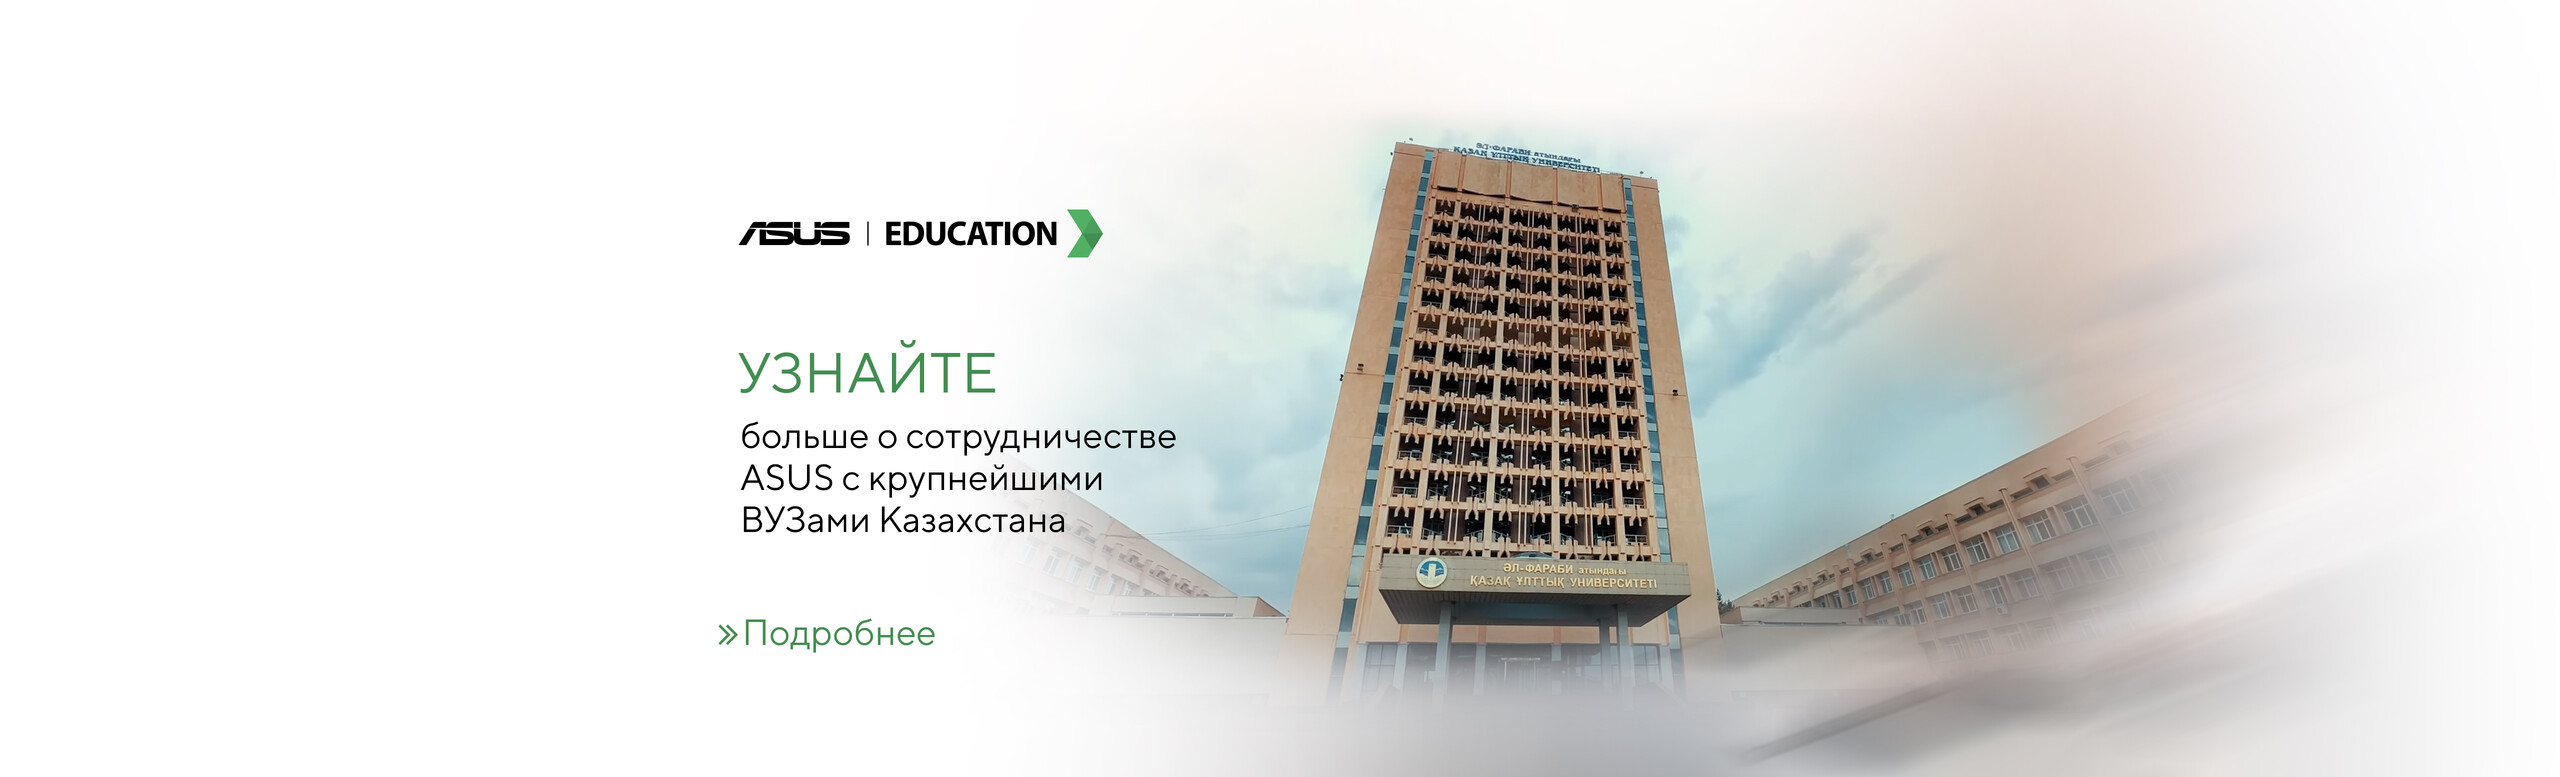 ASUS Education в Казахстане: реализованные проекты